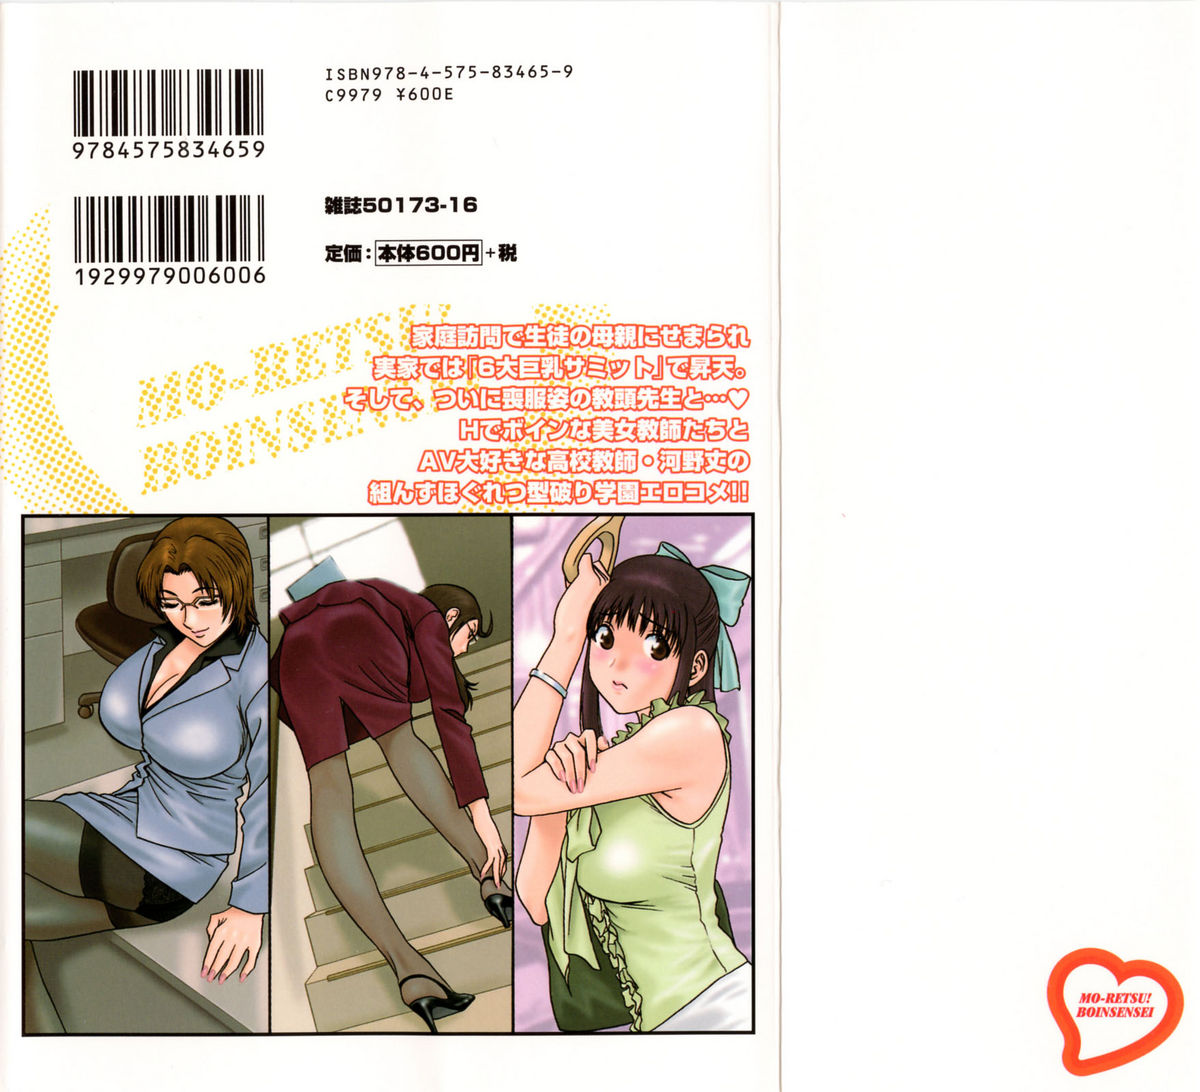 [Hidemaru] Mo-Retsu! Boin Sensei (Boing Boing Teacher) Vol.4 page 2 full